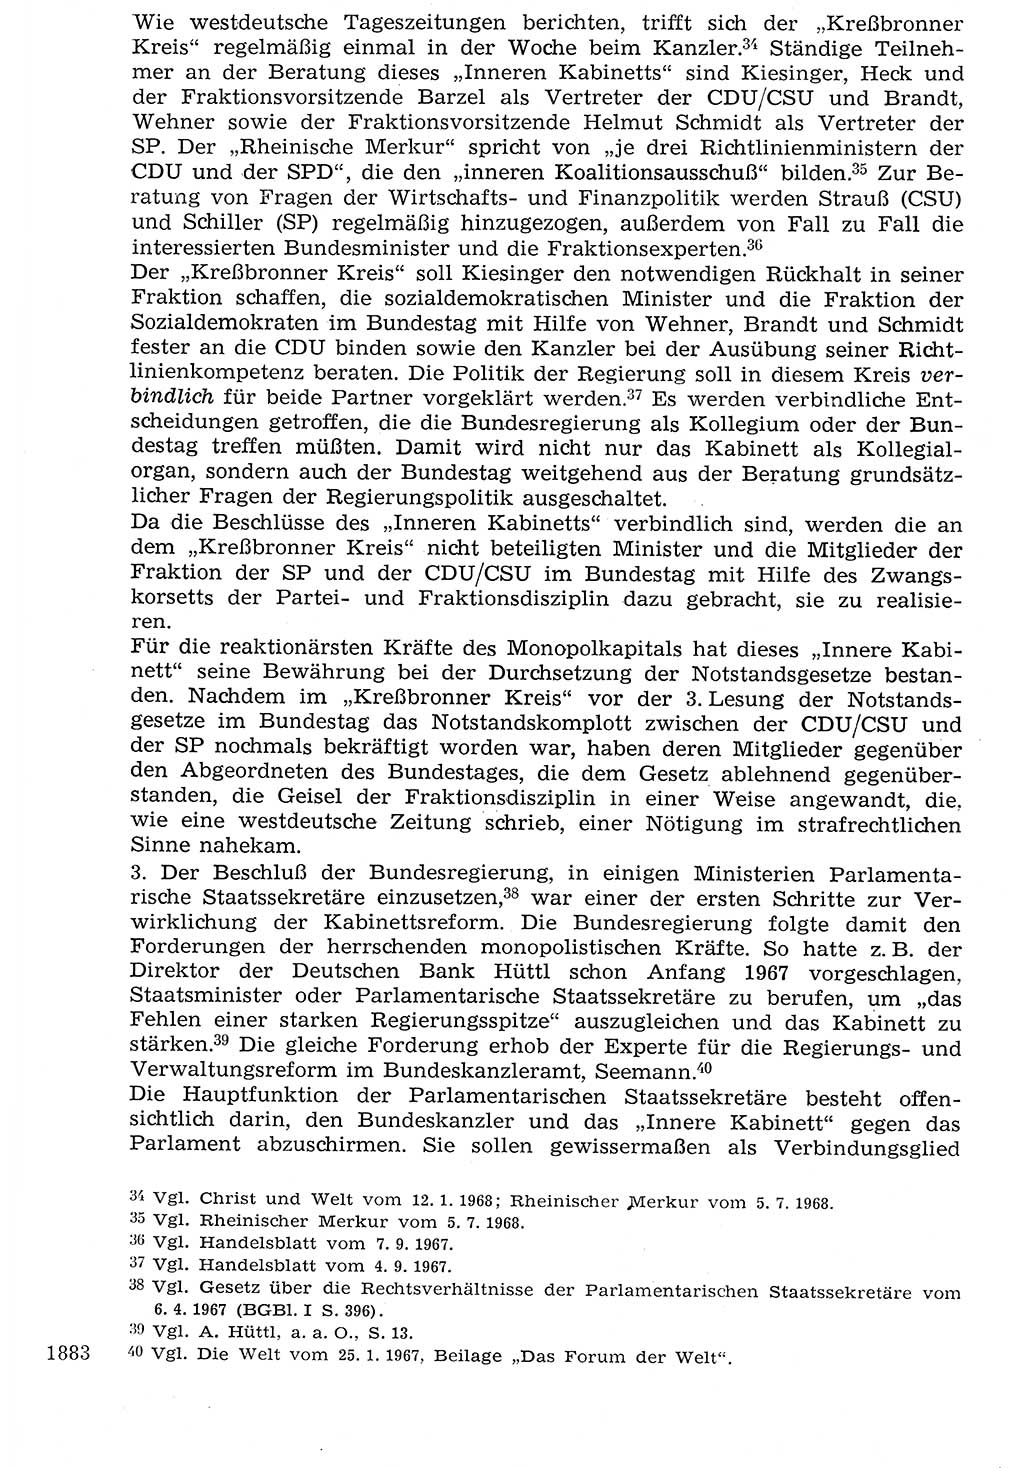 Staat und Recht (StuR), 17. Jahrgang [Deutsche Demokratische Republik (DDR)] 1968, Seite 1883 (StuR DDR 1968, S. 1883)